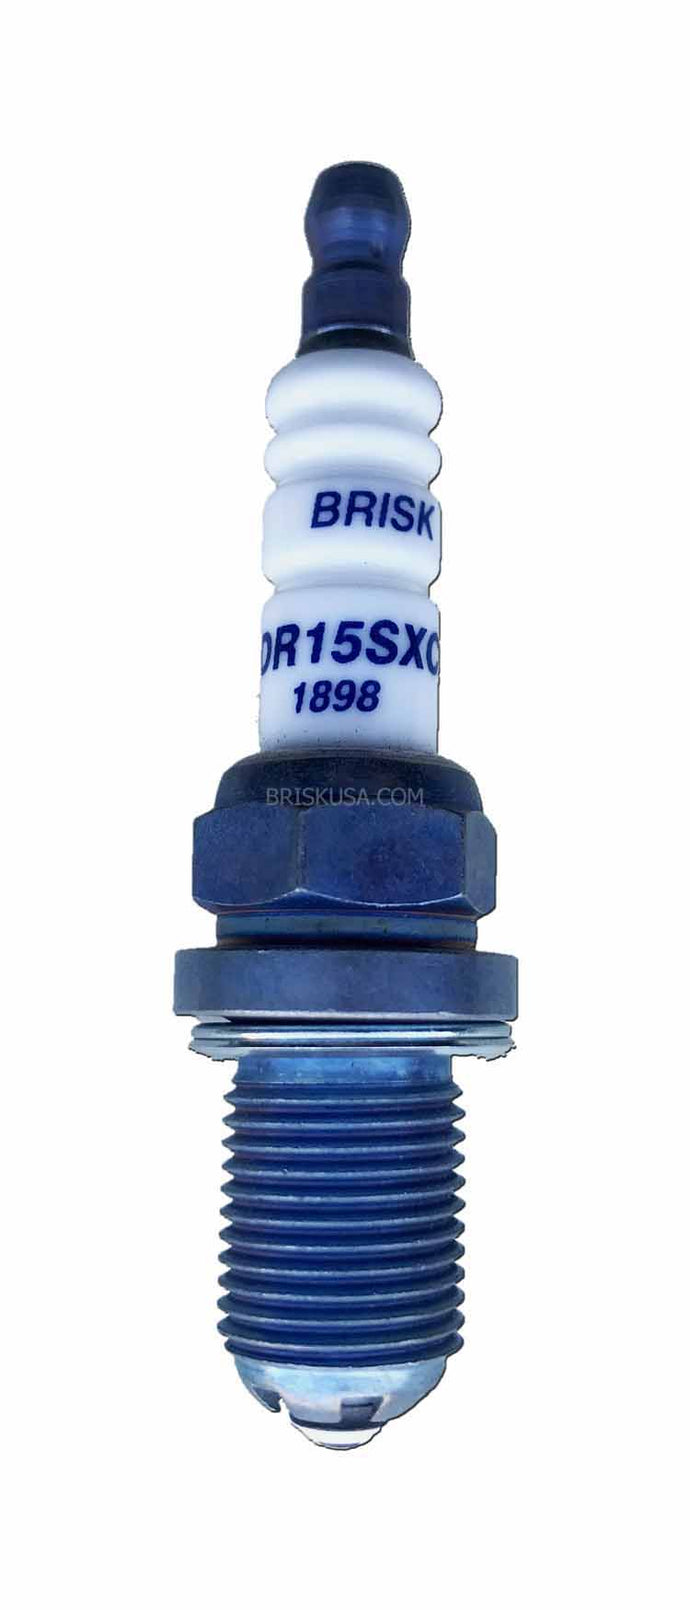 Brisk Premium Evo DR15SXC Spark Plug